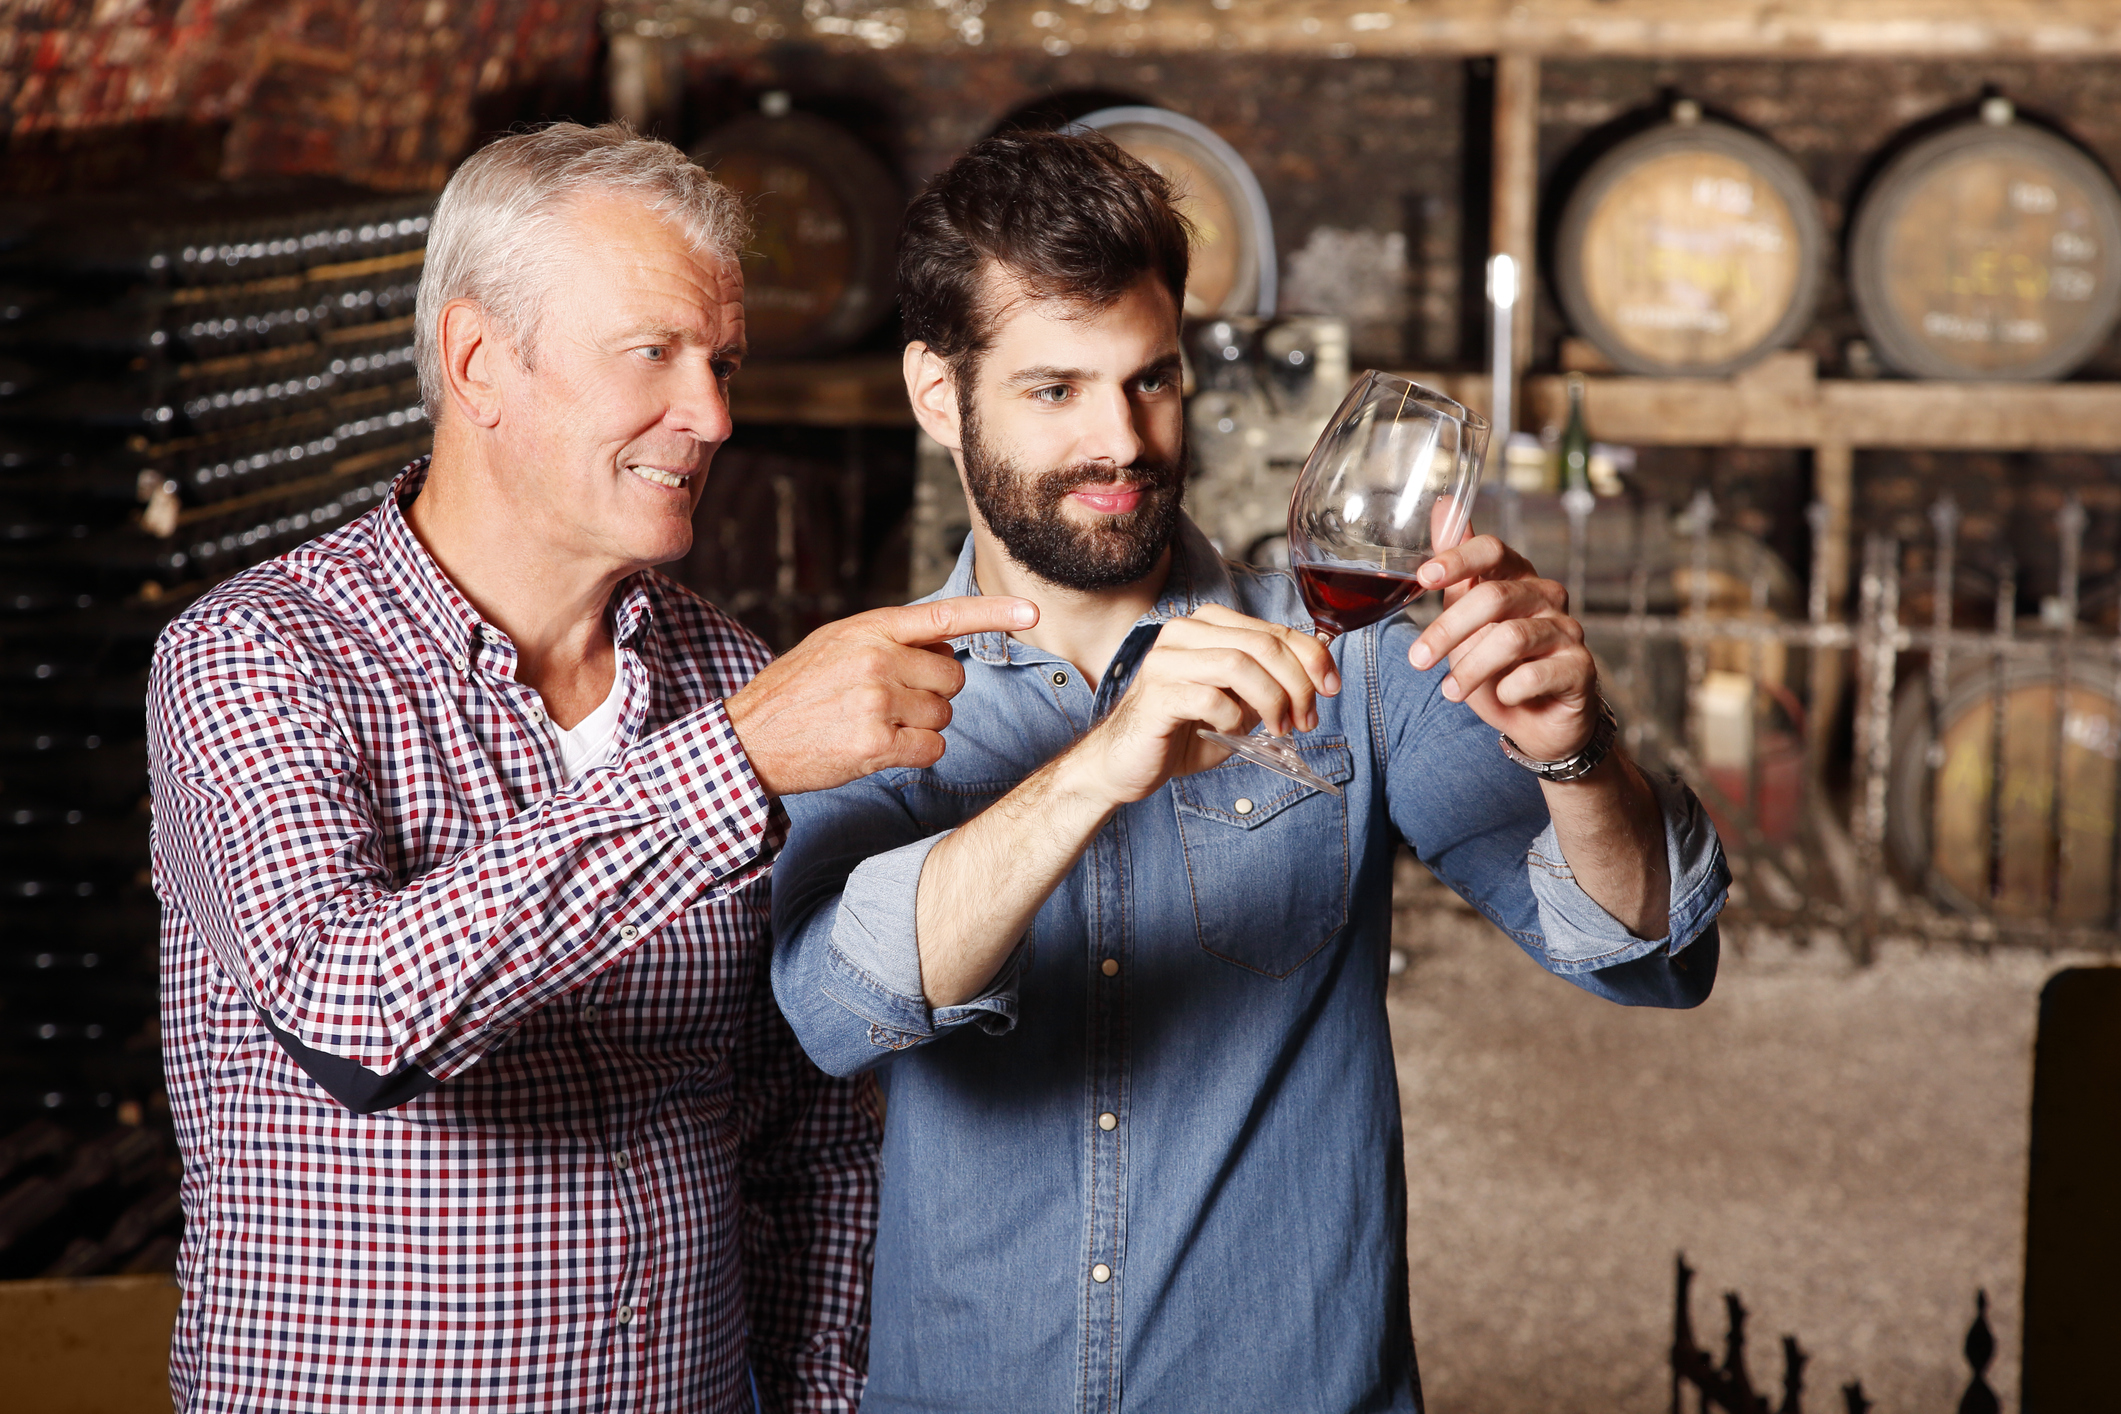 Otec a syn pracujú spoločne vo svojej rodinnej vinárni.